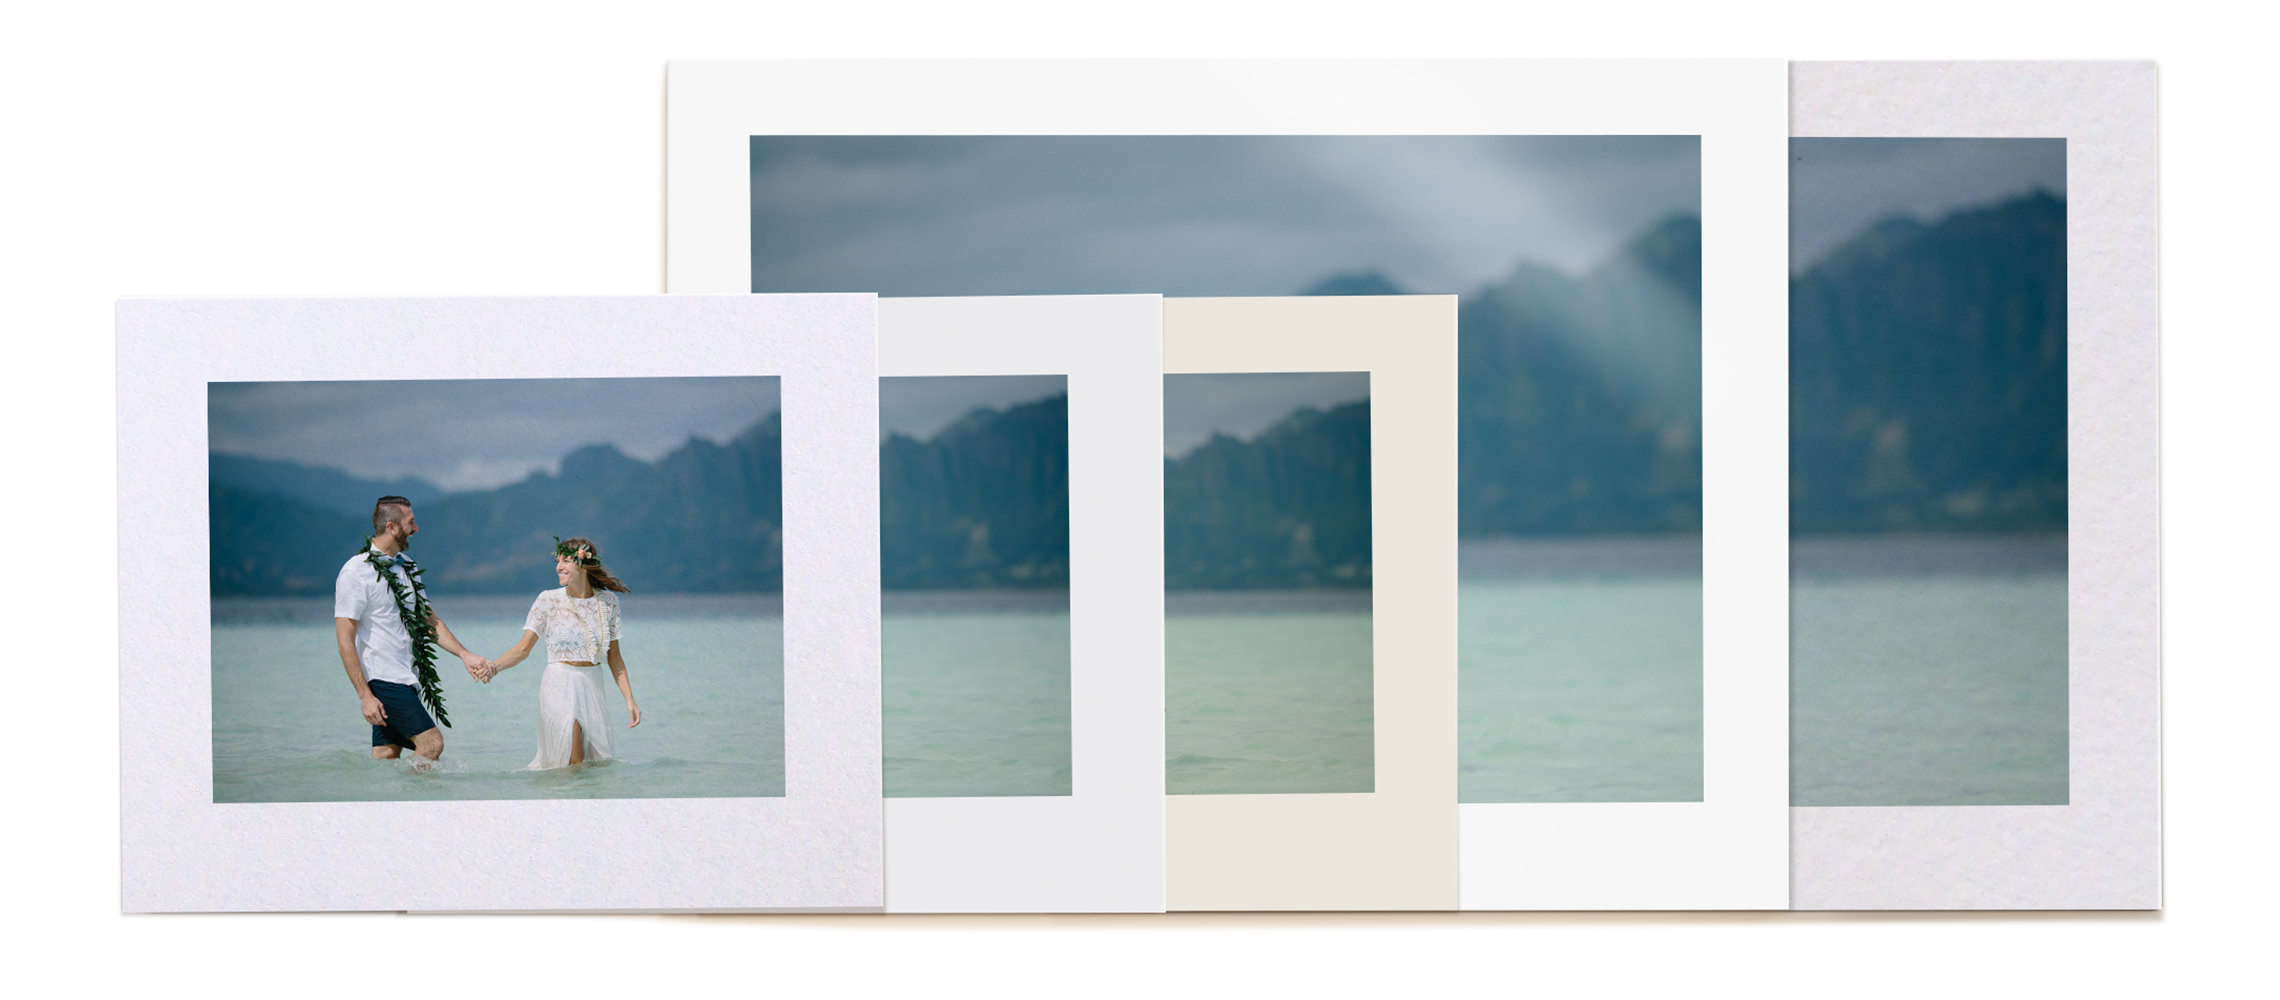 5 álbuns fotográficos MILK diferentes em diferentes formatos e tamanhos.